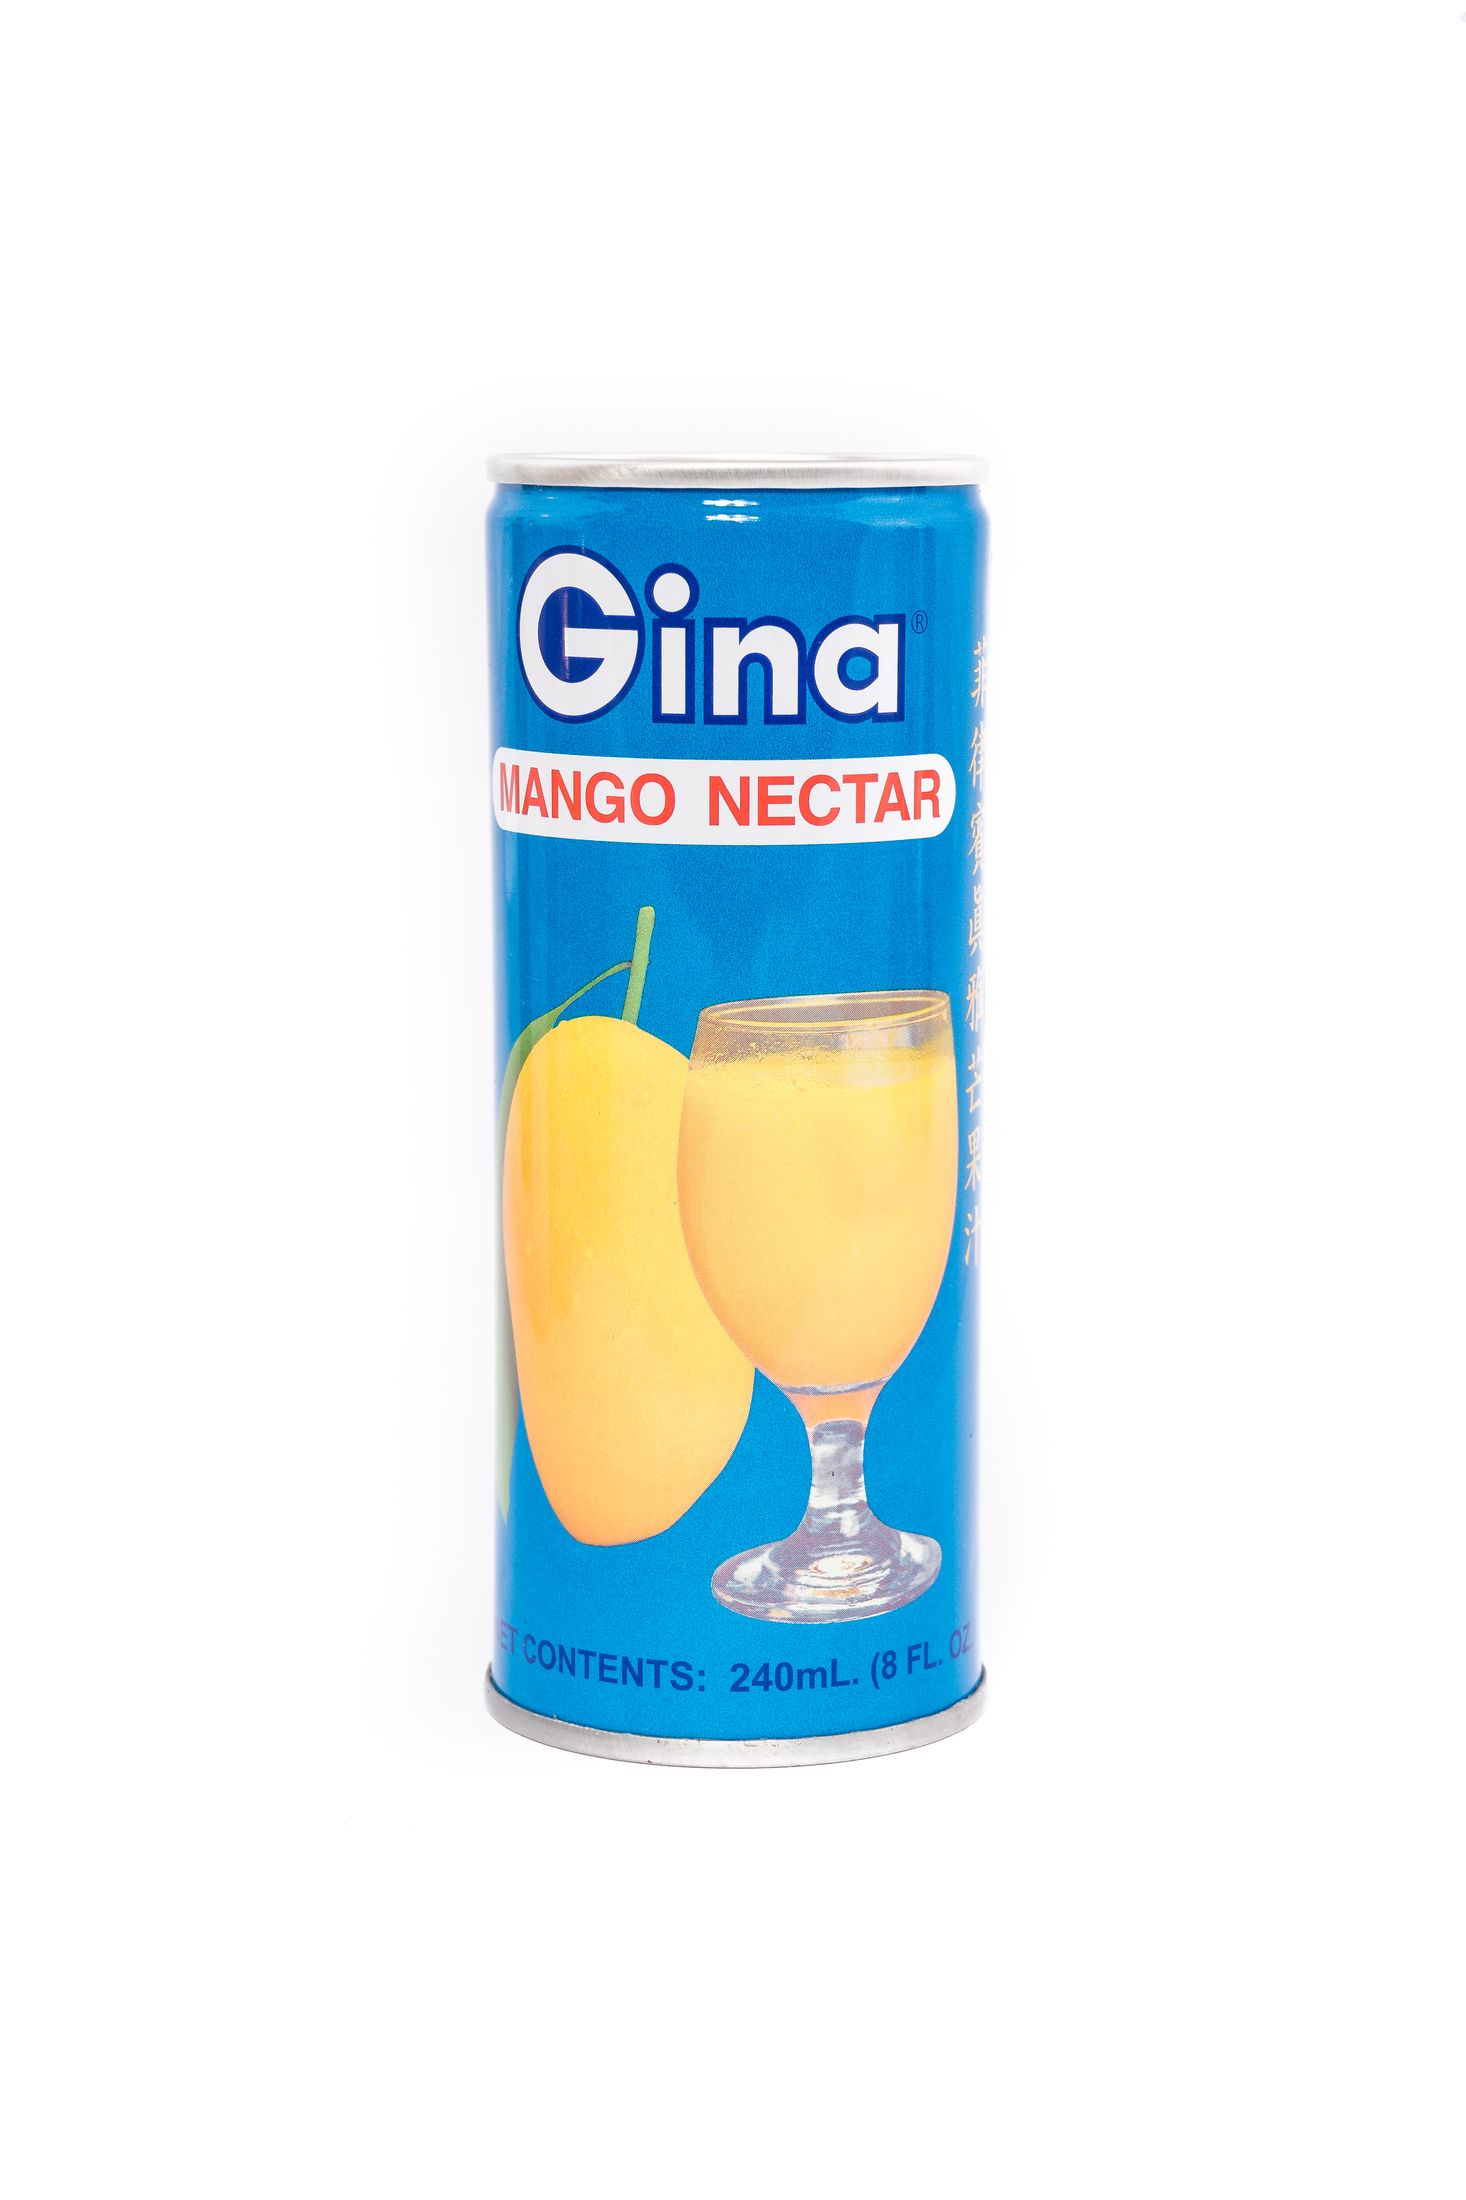 Gina Mango nectar